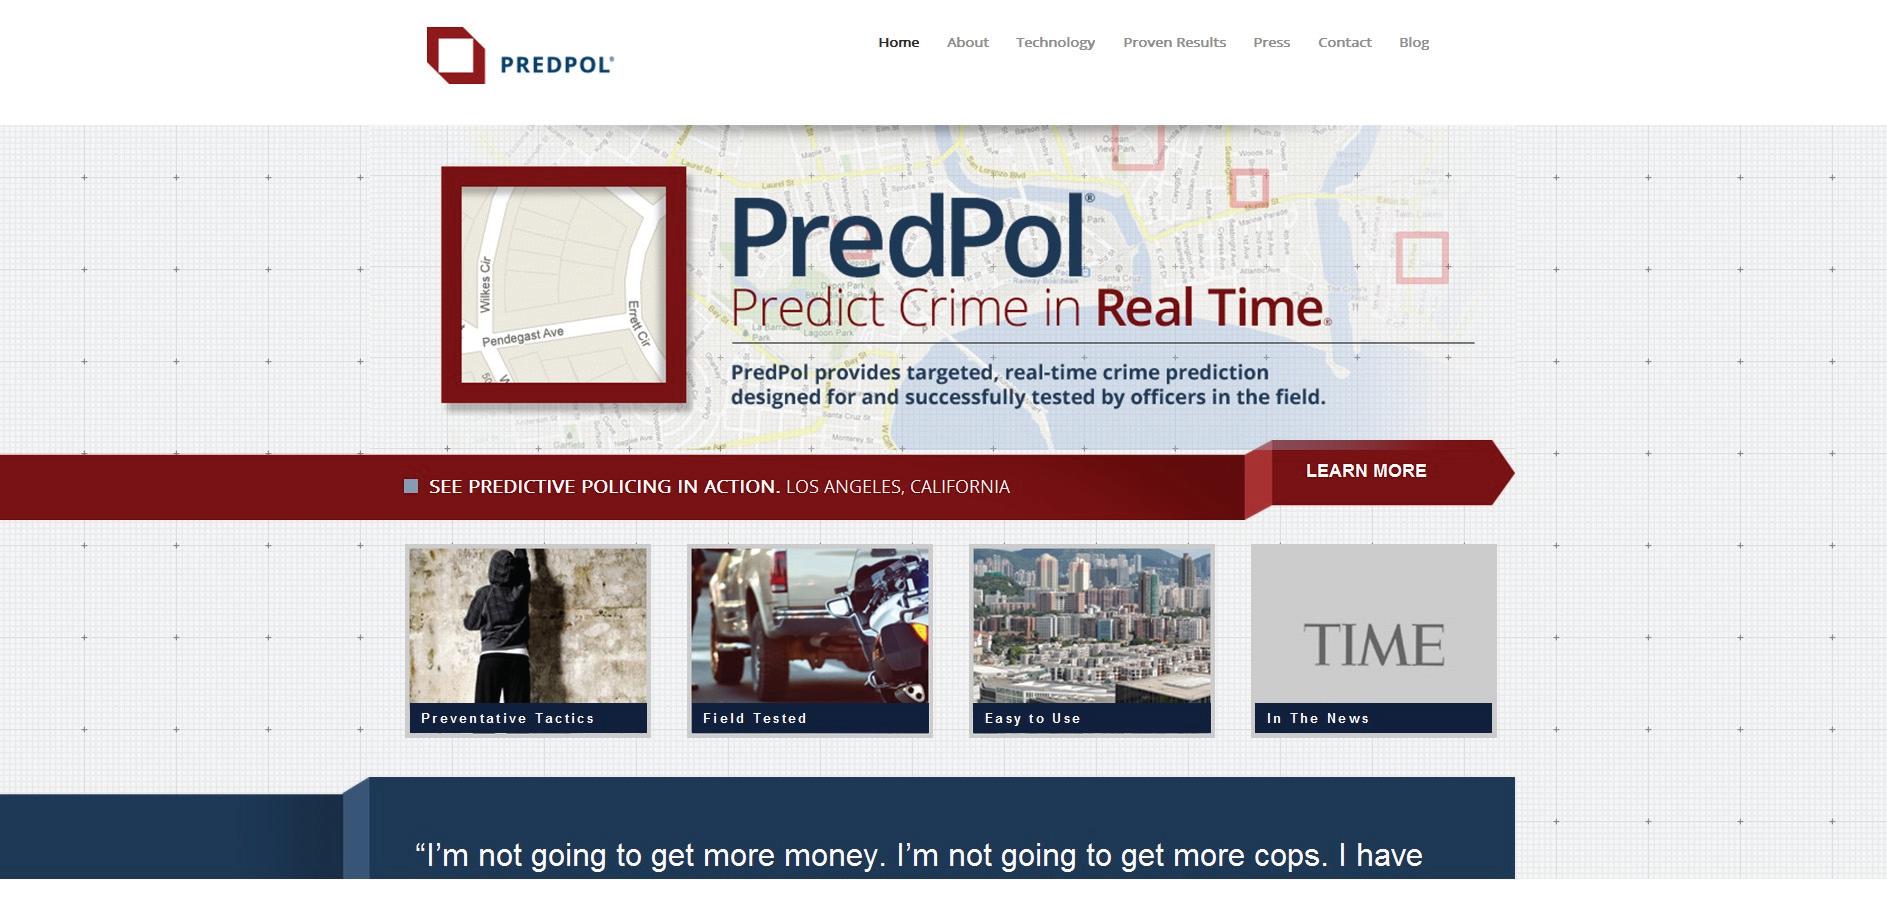 PREDPOL(범죄예측도구) 홈페이지 화면